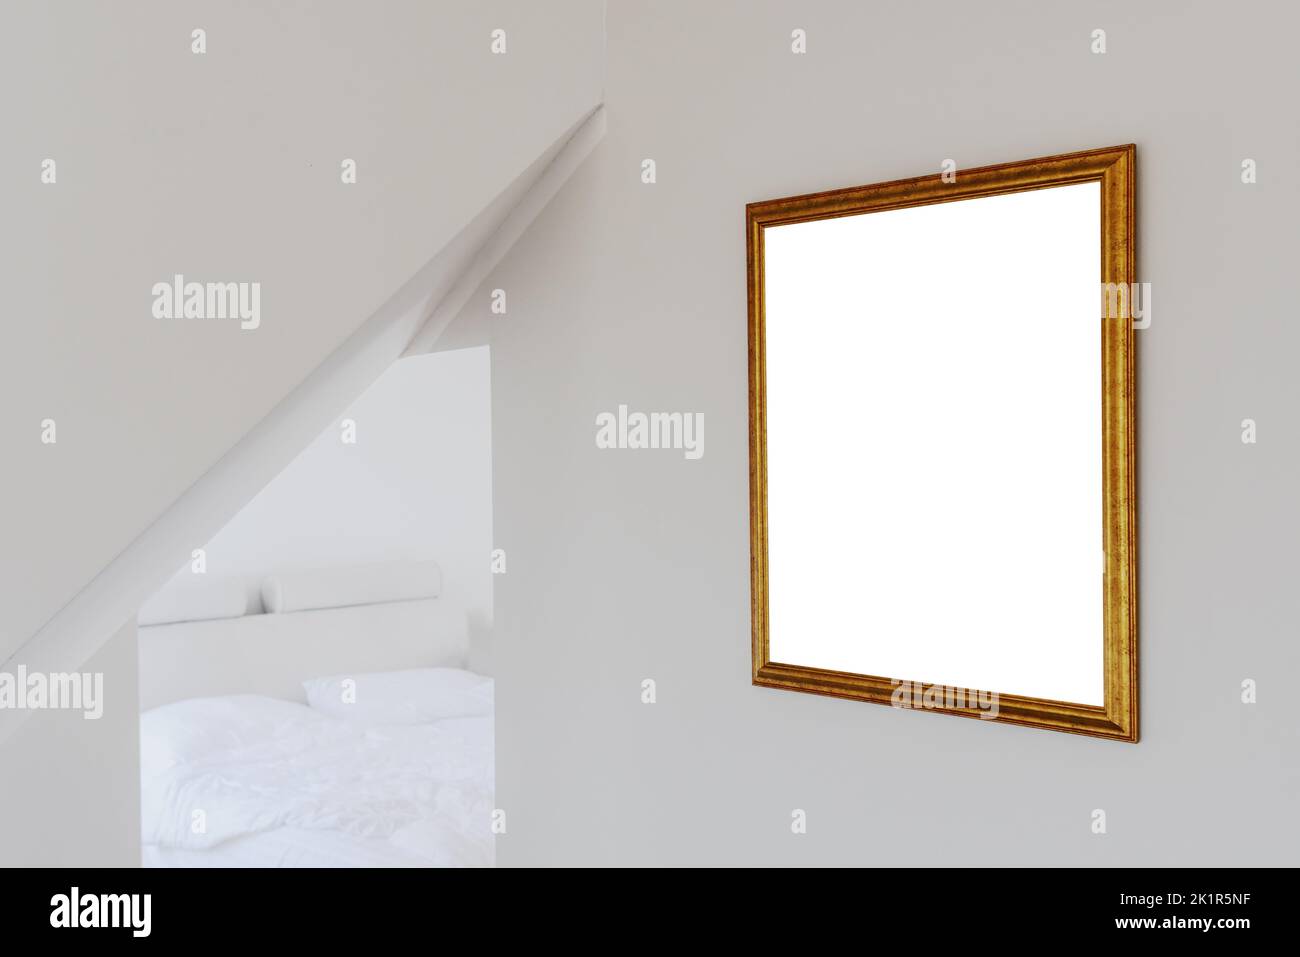 Spazio vuoto copia mockup in cornice di legno color oro appeso alla parete della camera da letto, fuoco selettivo Foto Stock